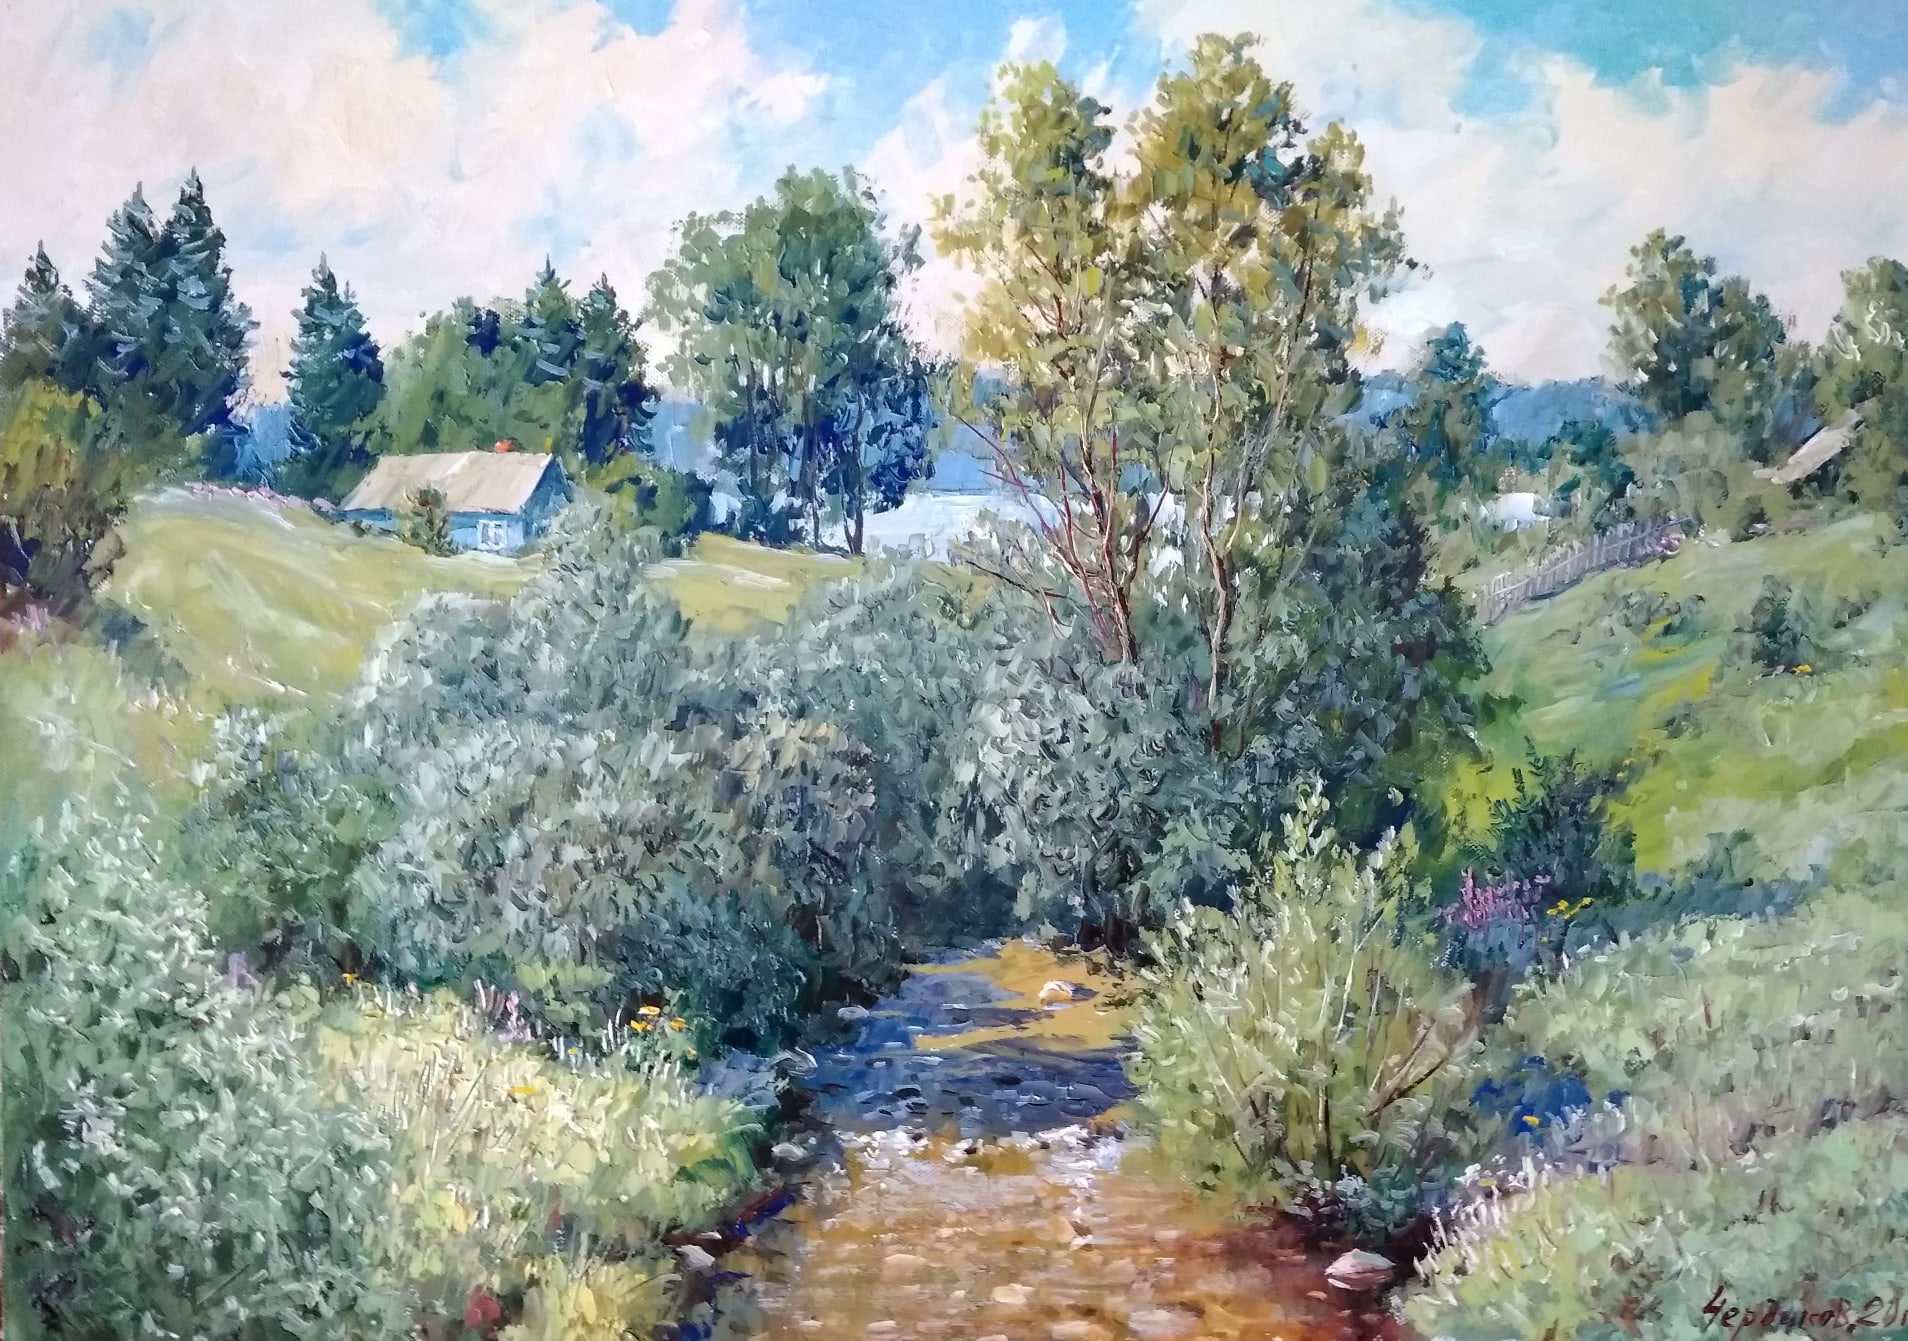 In the vicinity of Ferapontovo - 1, Vyacheslav Cherdakov, Buy the painting Oil